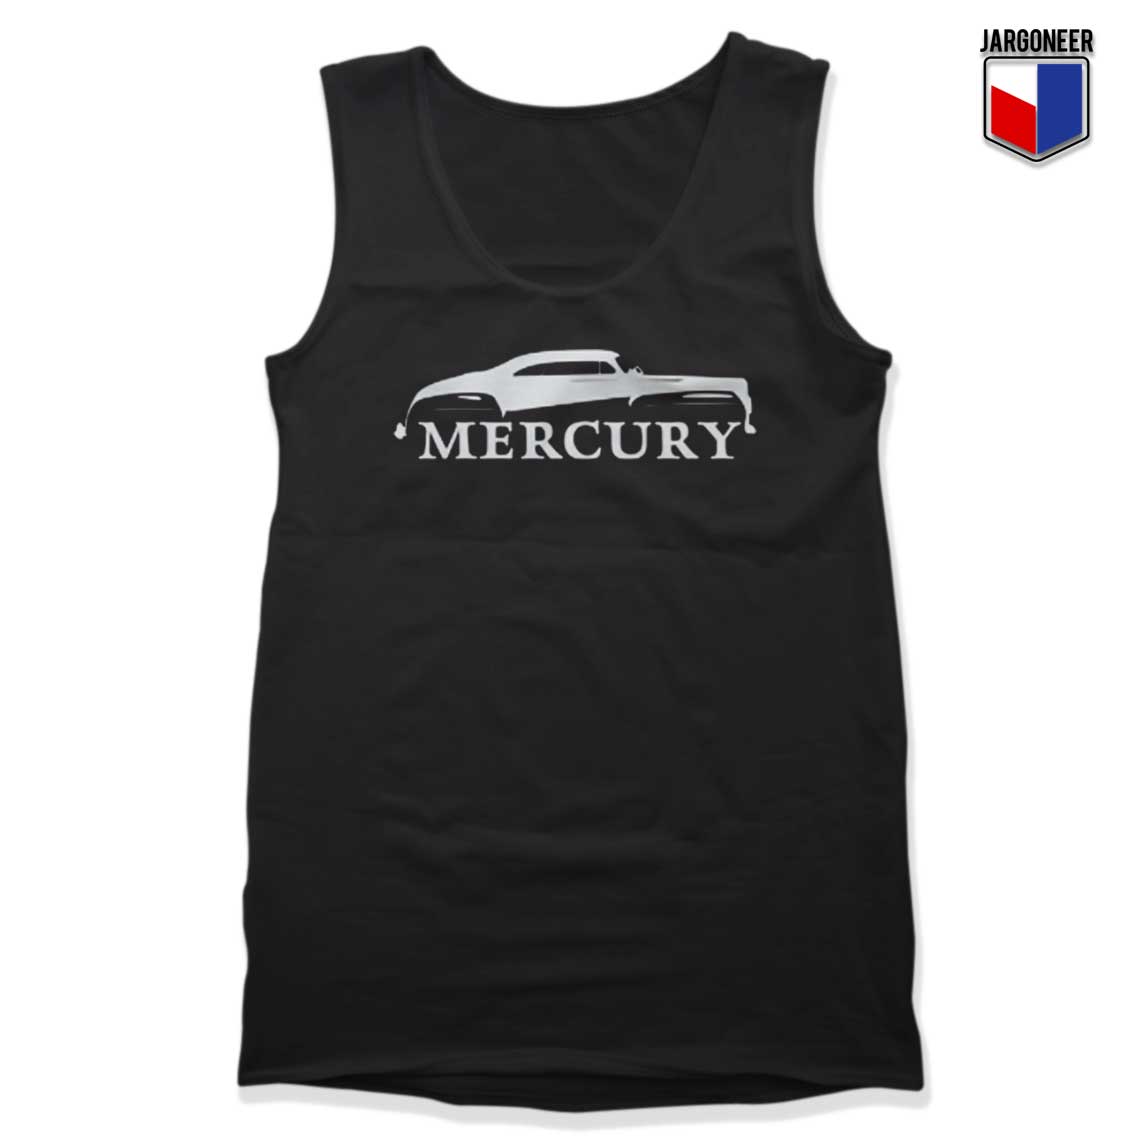 Mercury Classic Tank Top - Shop Unique Graphic Cool Shirt Designs